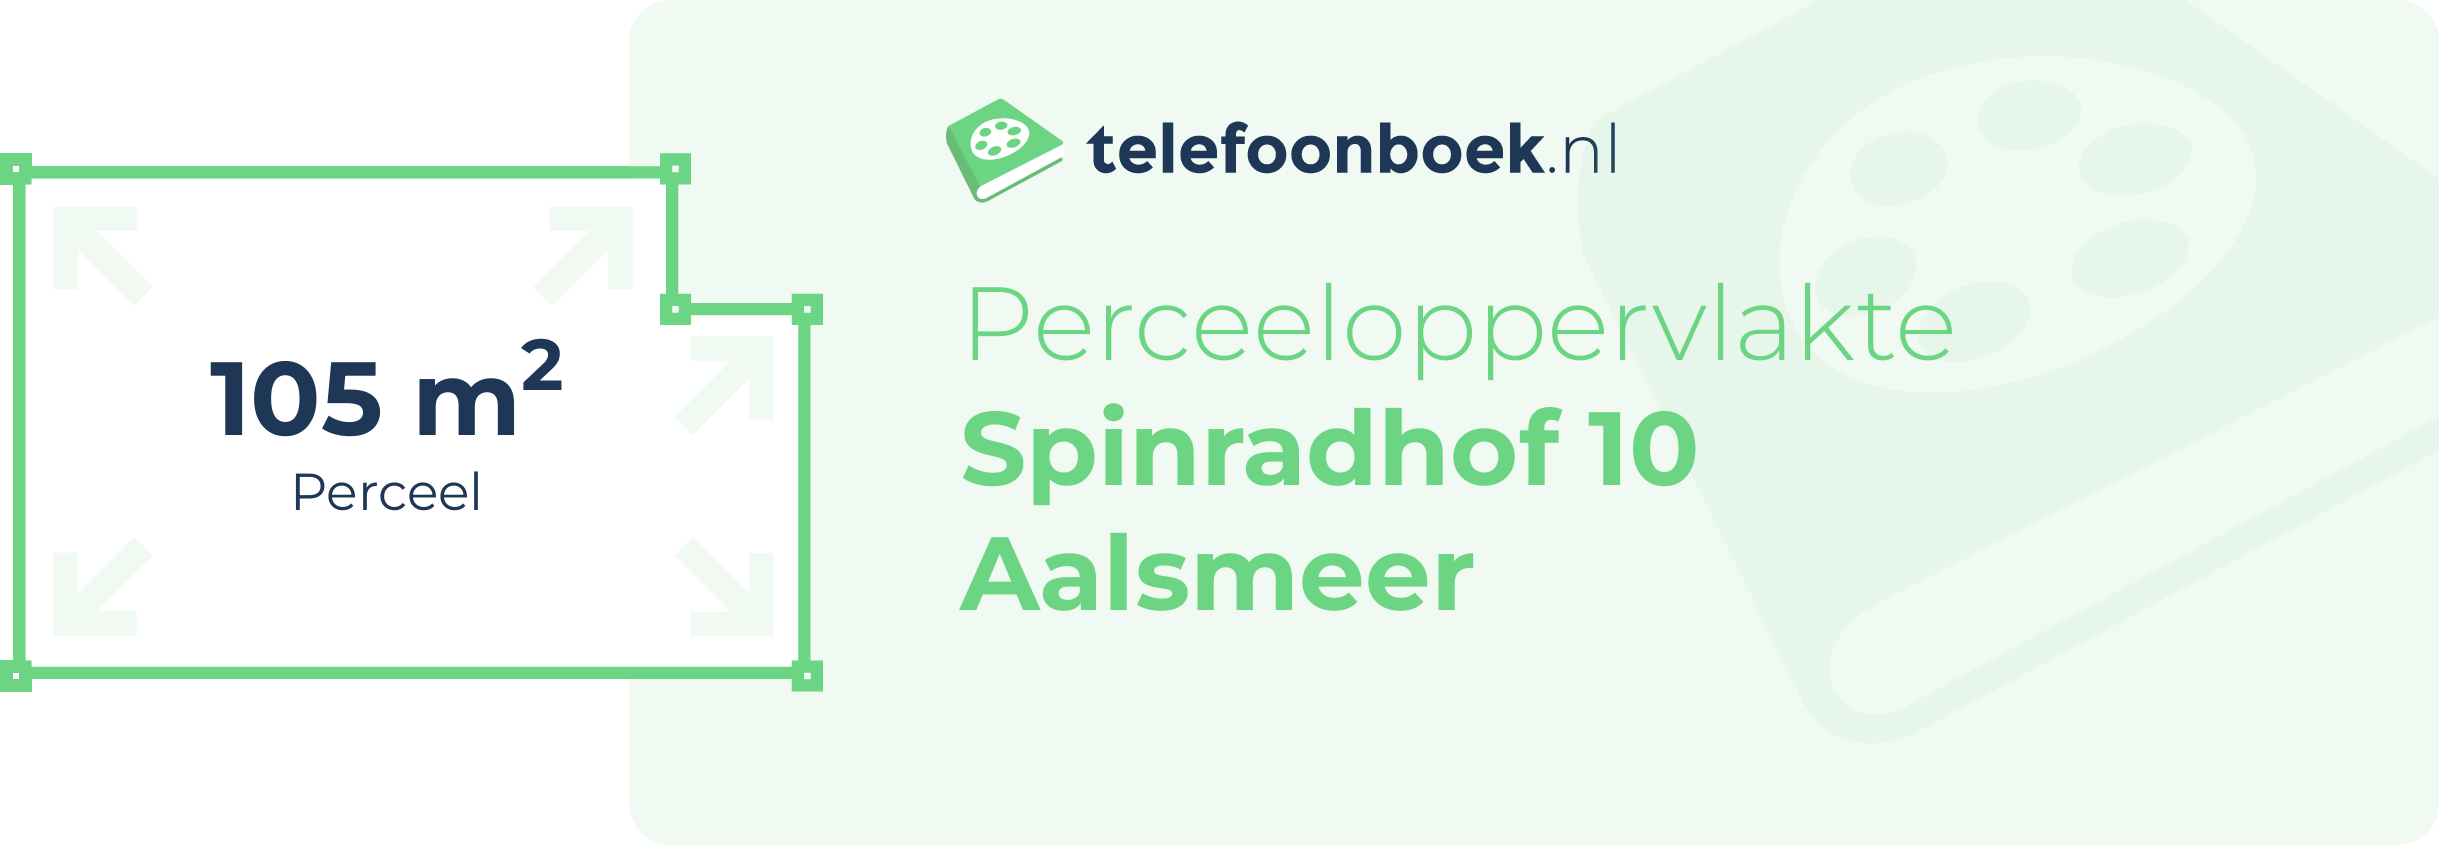 Perceeloppervlakte Spinradhof 10 Aalsmeer